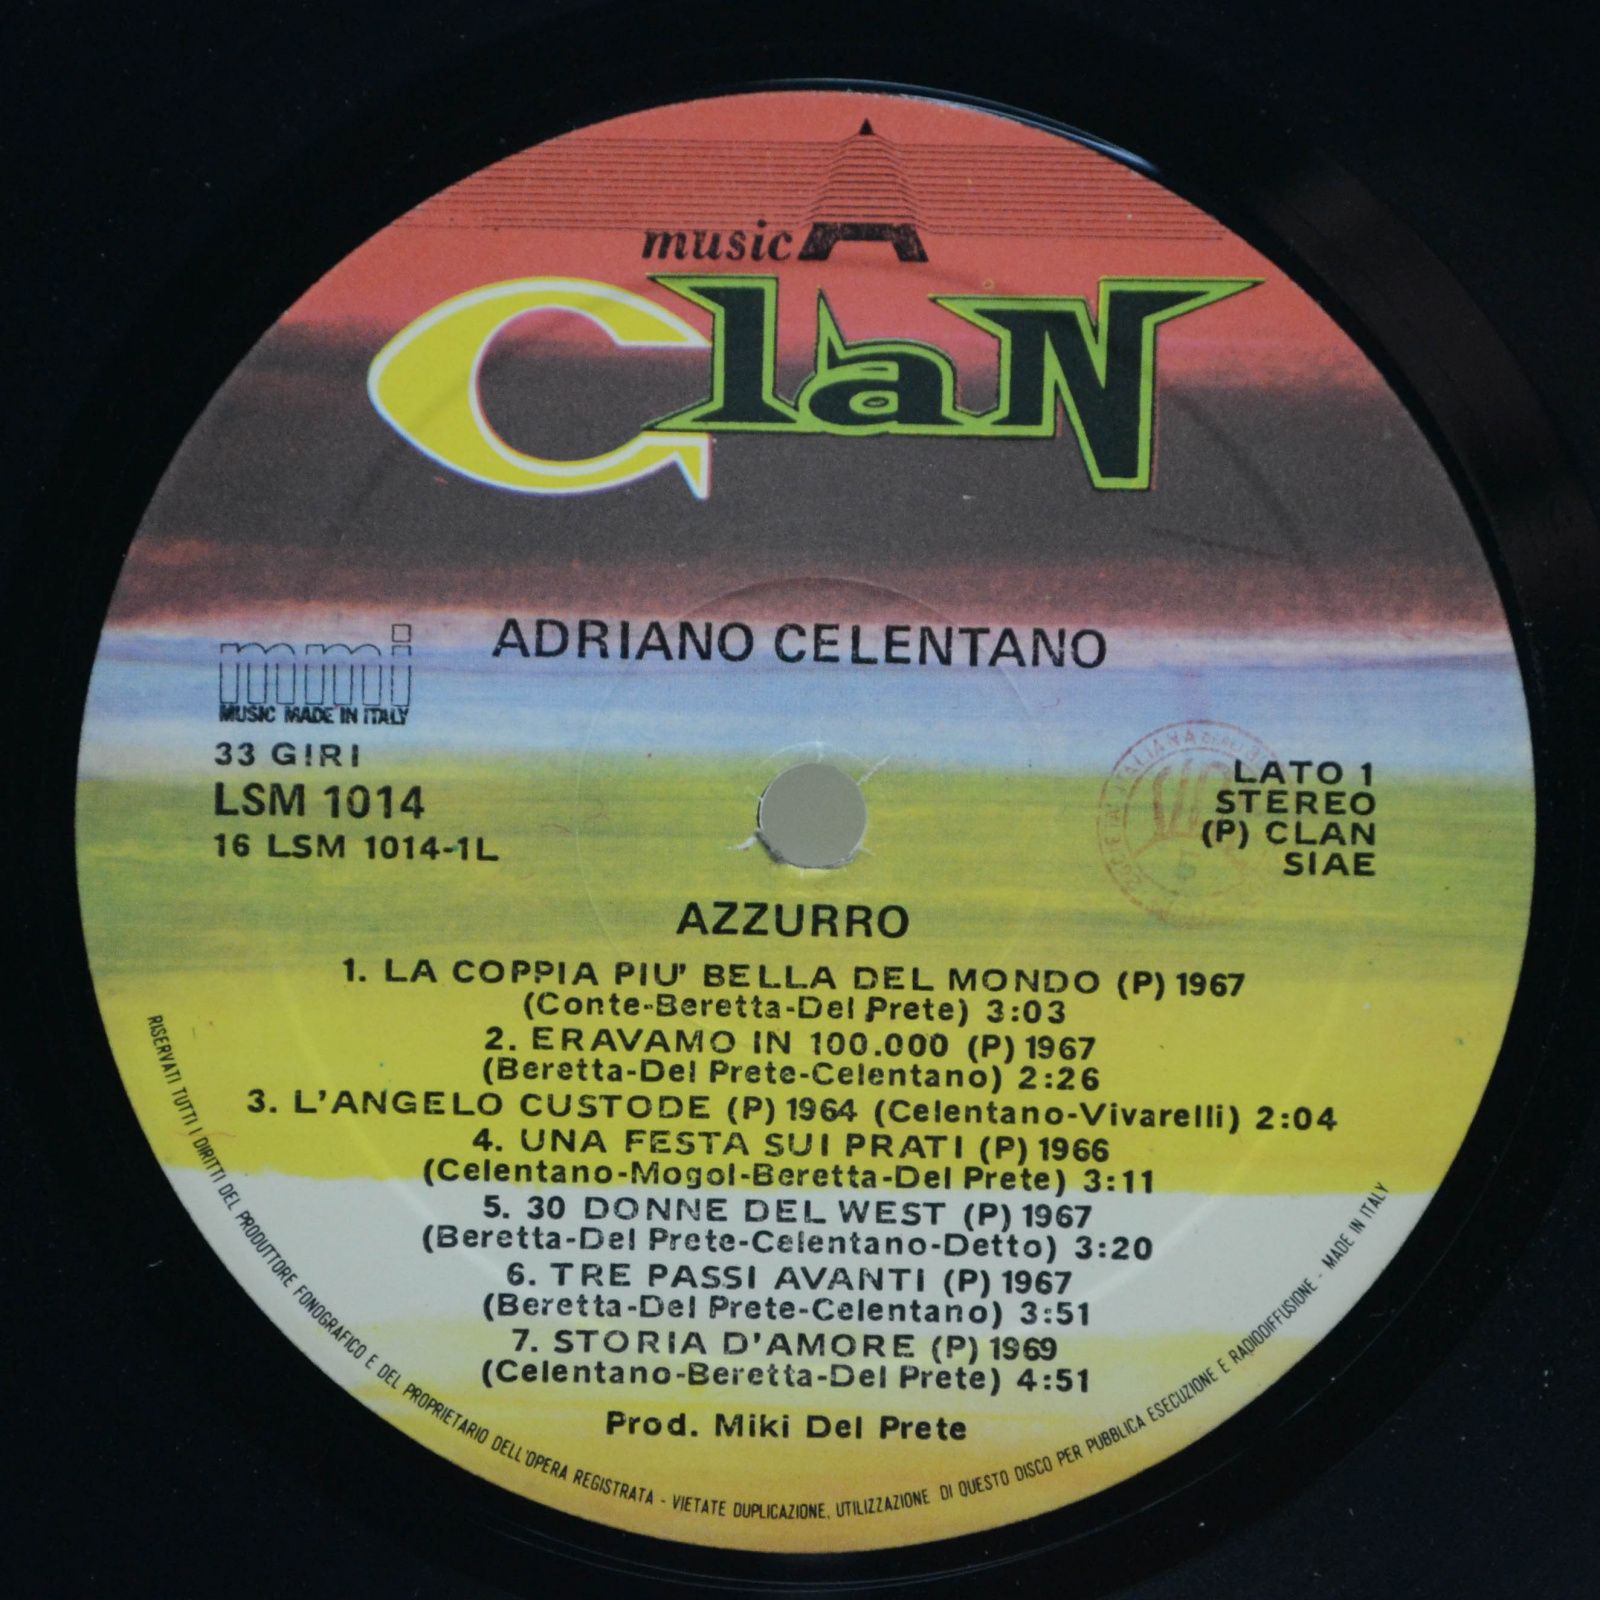 Adriano Celentano — Azzurro (1-st, Italy, Clan), 1983